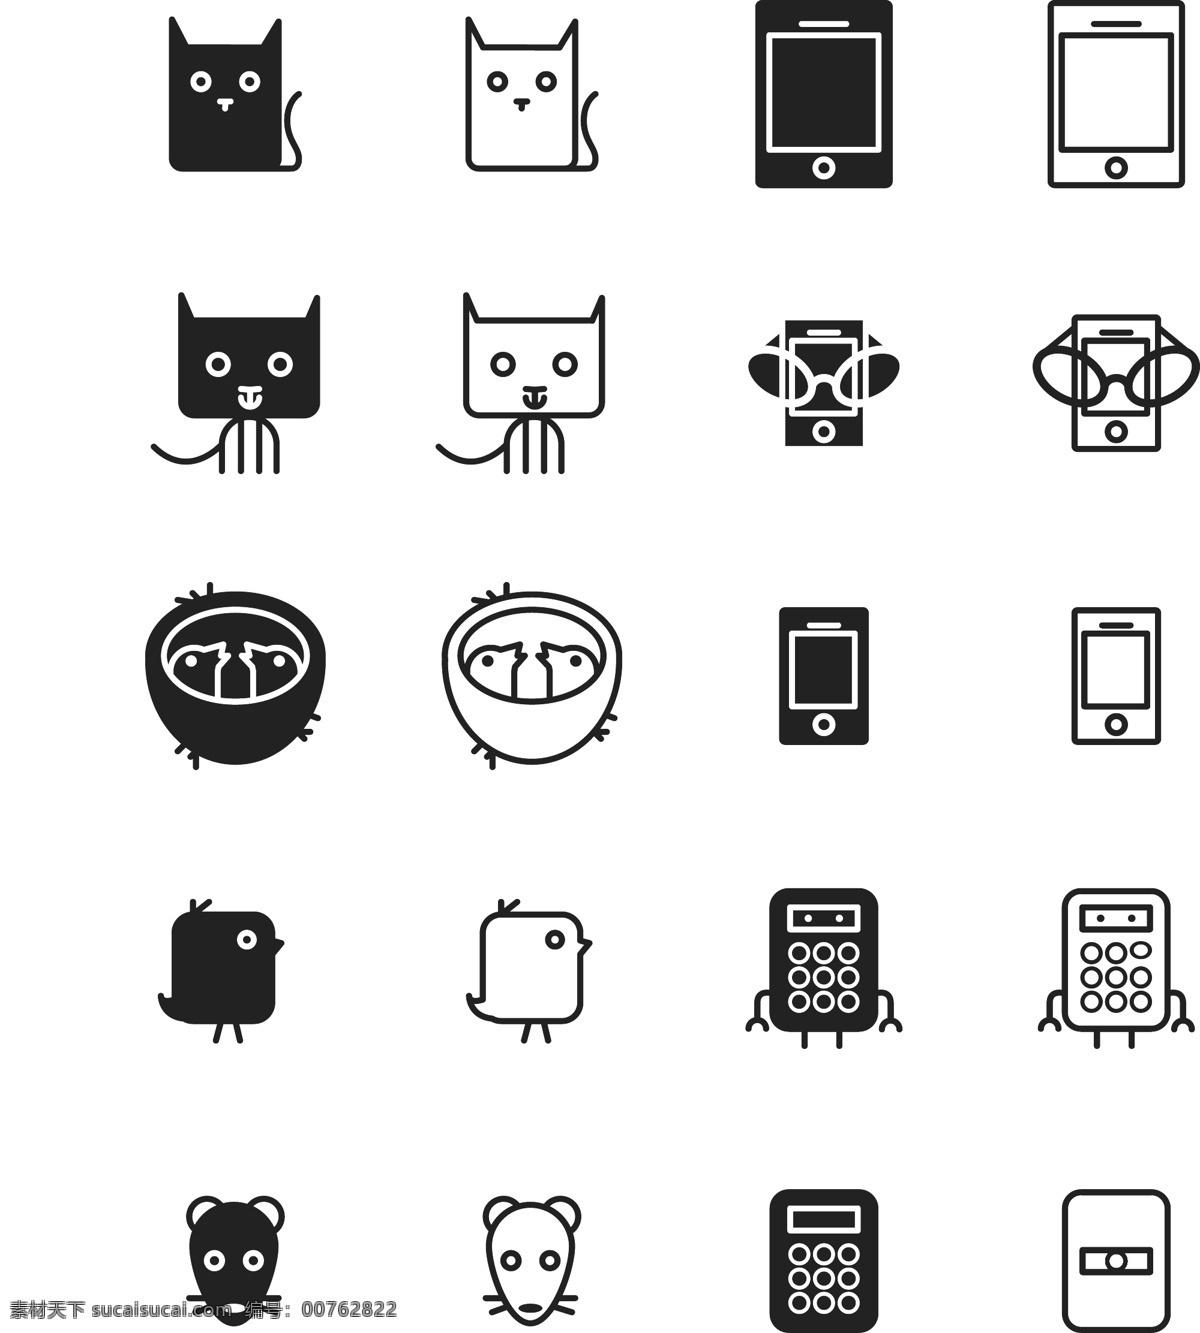 可爱icon 图标 可爱 简笔 icon 手机 ipad 计算器 小鸟 猫 黑白 标志图标 网页小图标